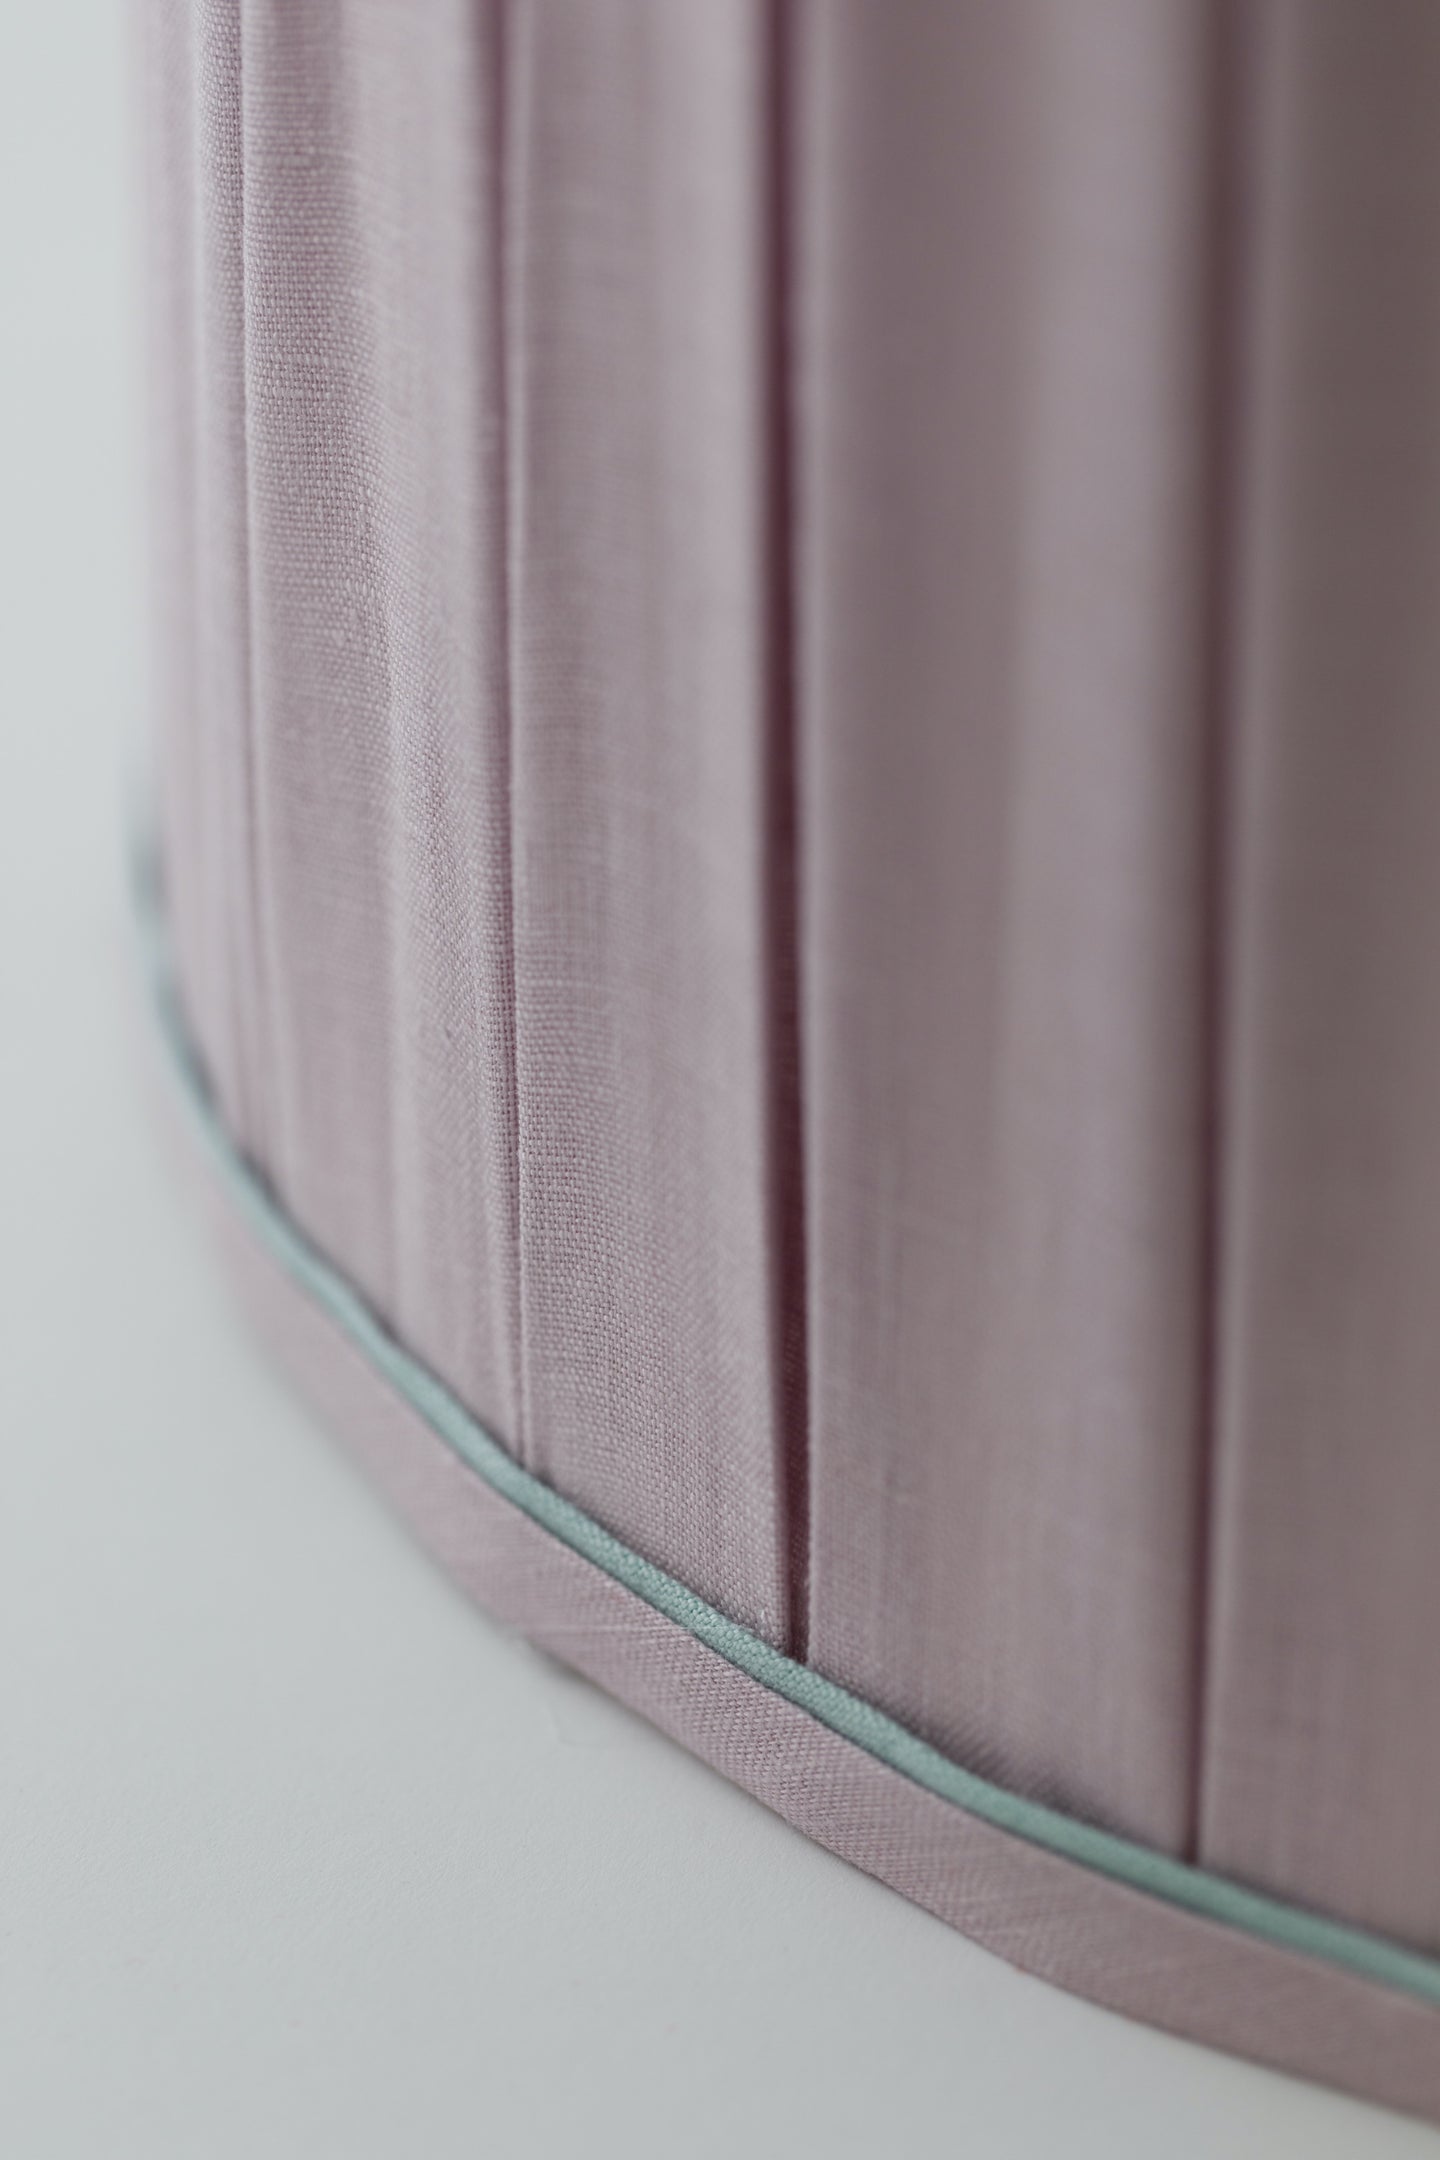 Balance: Fresh Linen & Lavender – Monrk Co.